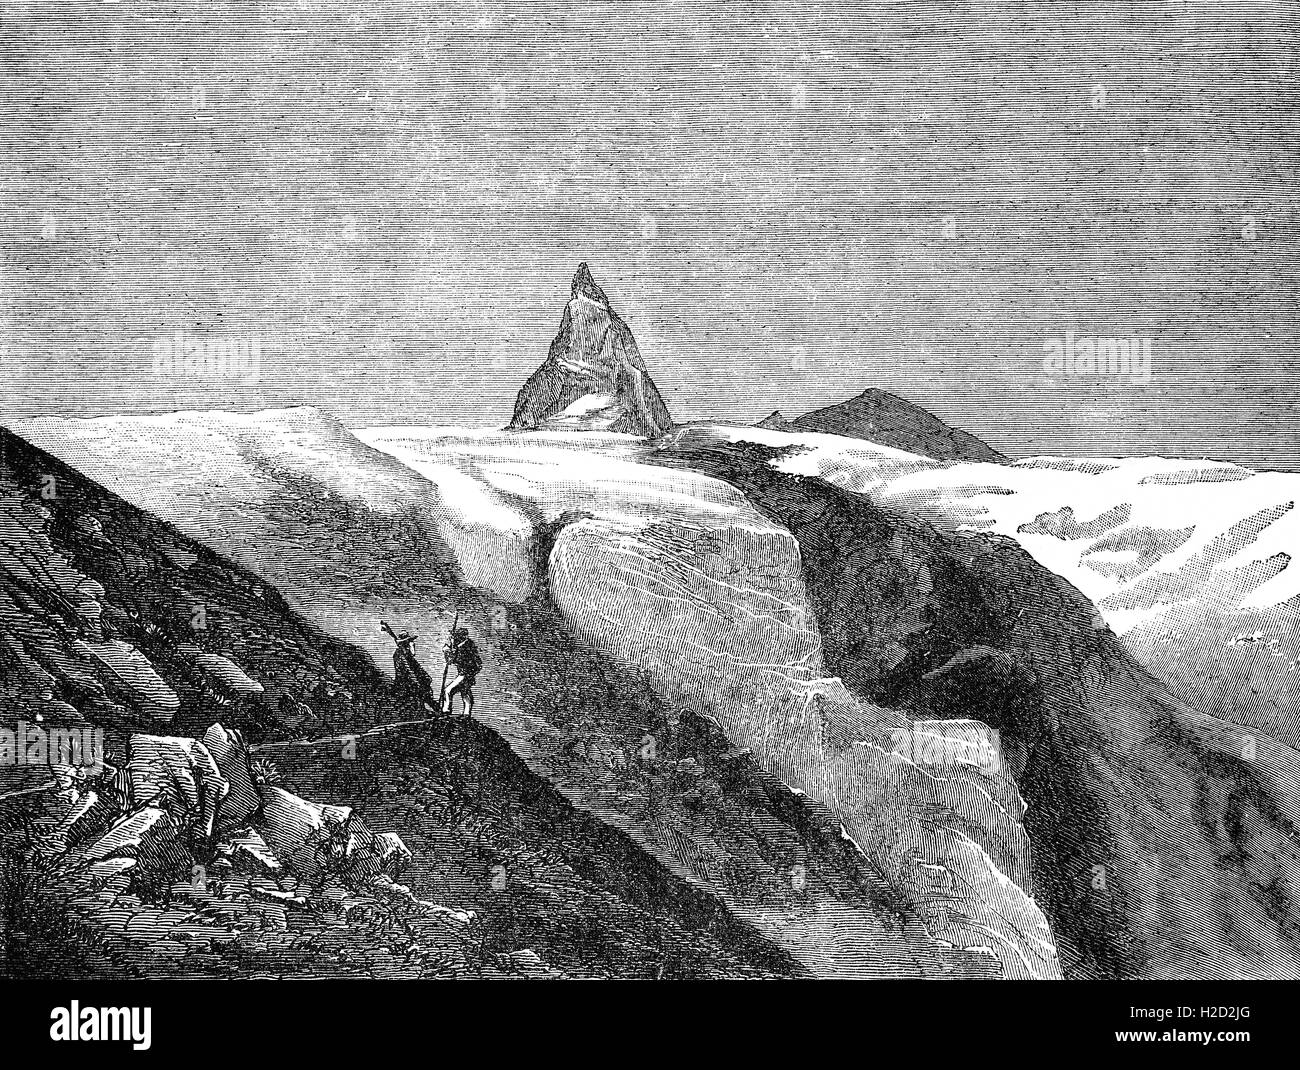 Croquis du 19e siècle des guides de montagne voir le Cervin, une montagne des Alpes, à cheval sur les principaux bassins hydrographiques et de frontière entre la Suisse et l'Italie. C'est un énorme et proches du pic pyramidal symétrique dans l'extension de la zone du Mont Rose les Alpes Pennines, dont le sommet est 4 478 mètres (14 692 pieds) de haut, ce qui en fait l'un des plus hauts sommets dans les Alpes et l'Europe. Banque D'Images